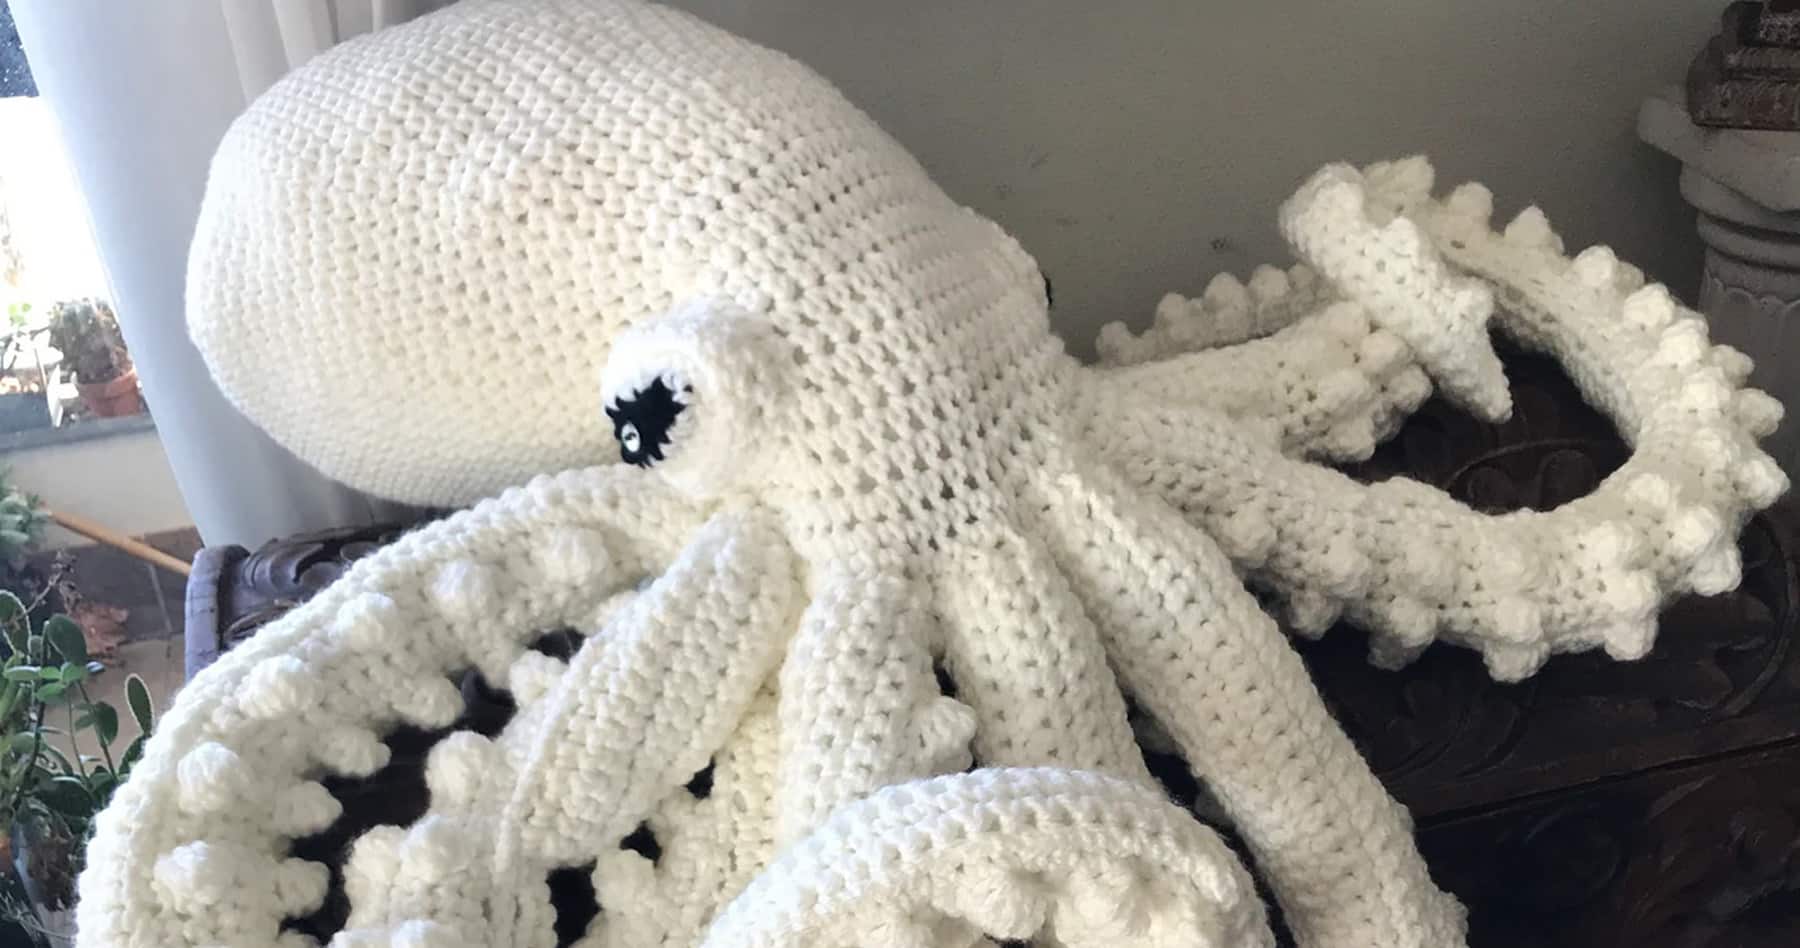 Giant Crochet Octopus